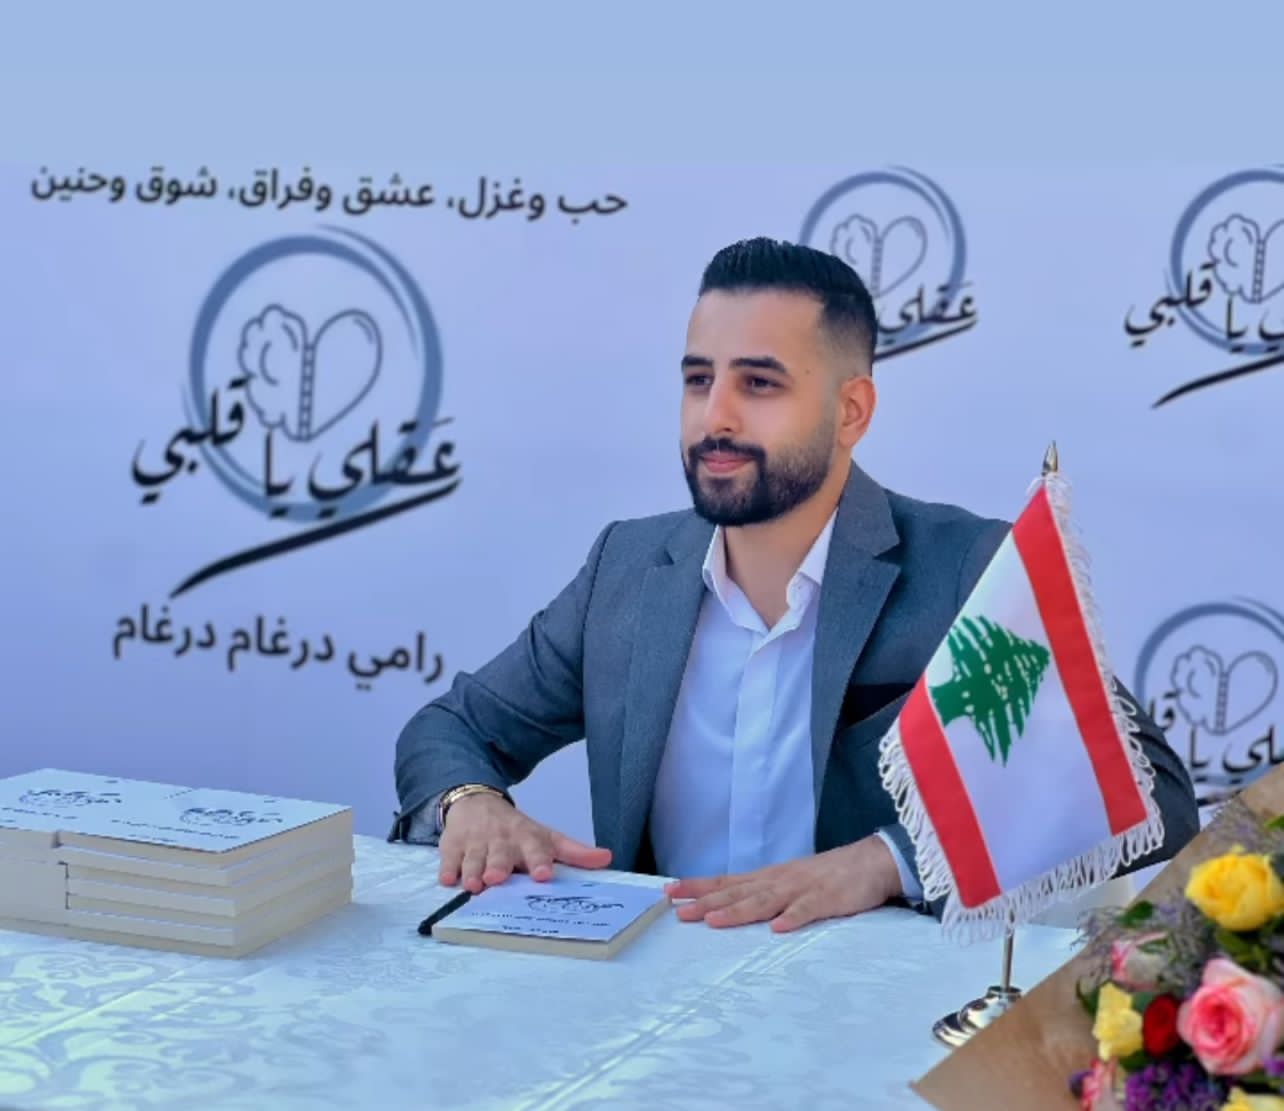 درغام يوقّع كتابه"عقلي يا قلبي" برعاية وزارة الثقافة